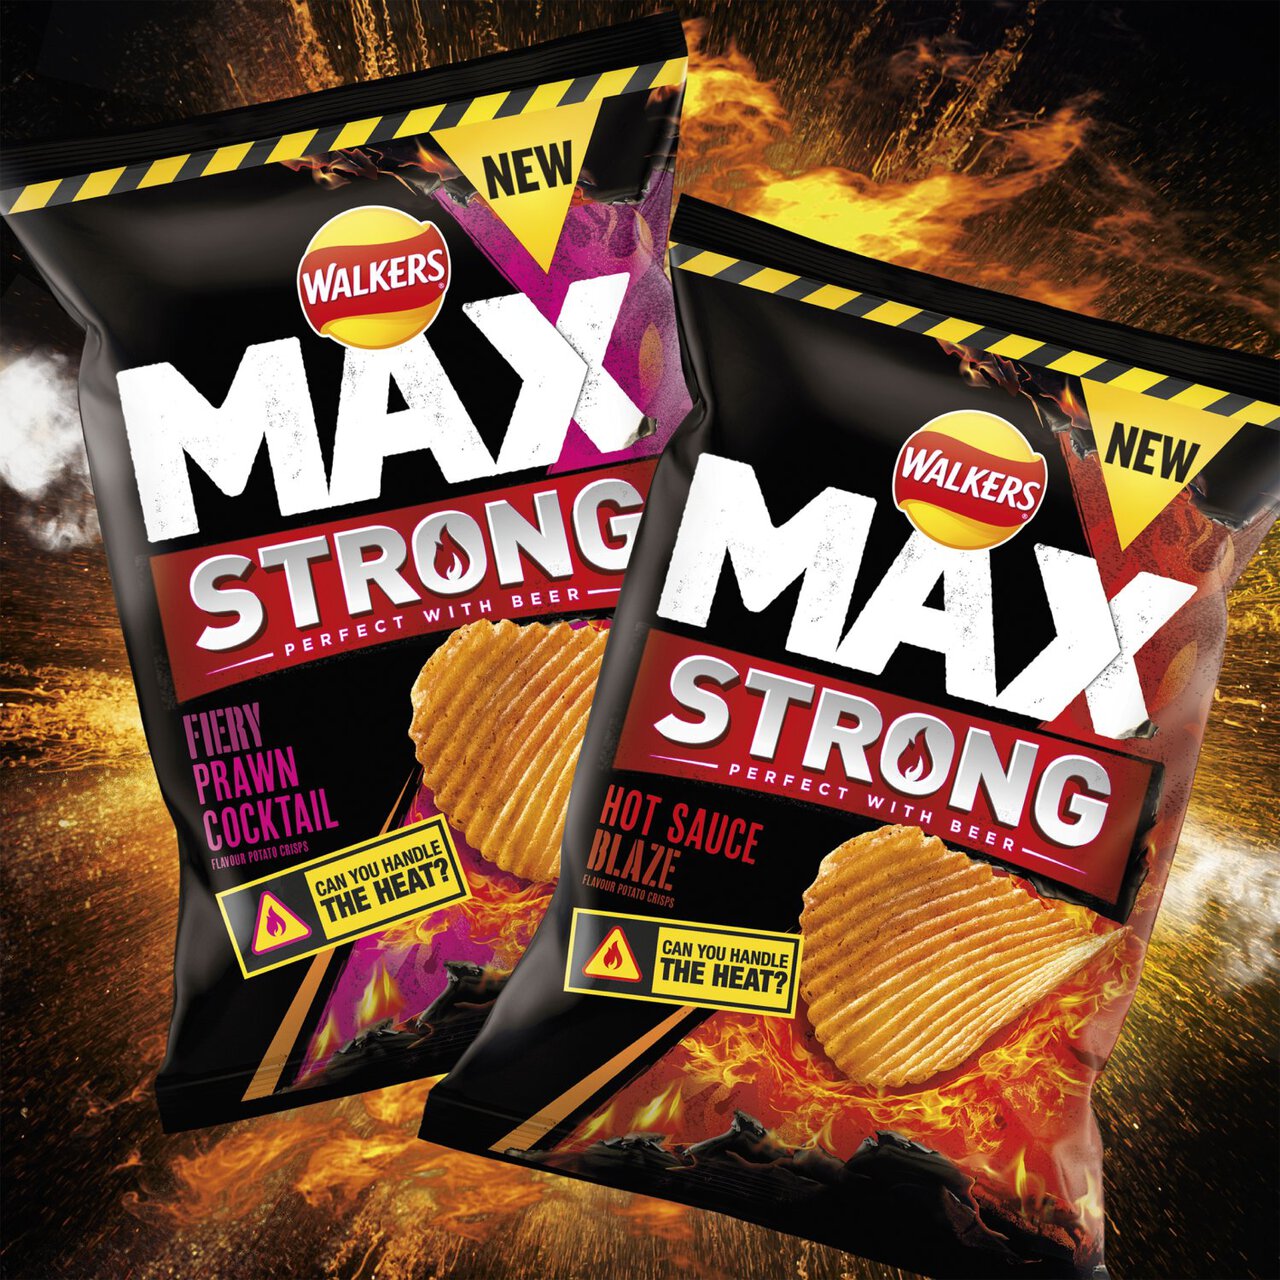 Walkers Max Strong Hot Sauce Blaze Sharing Crisps 140g